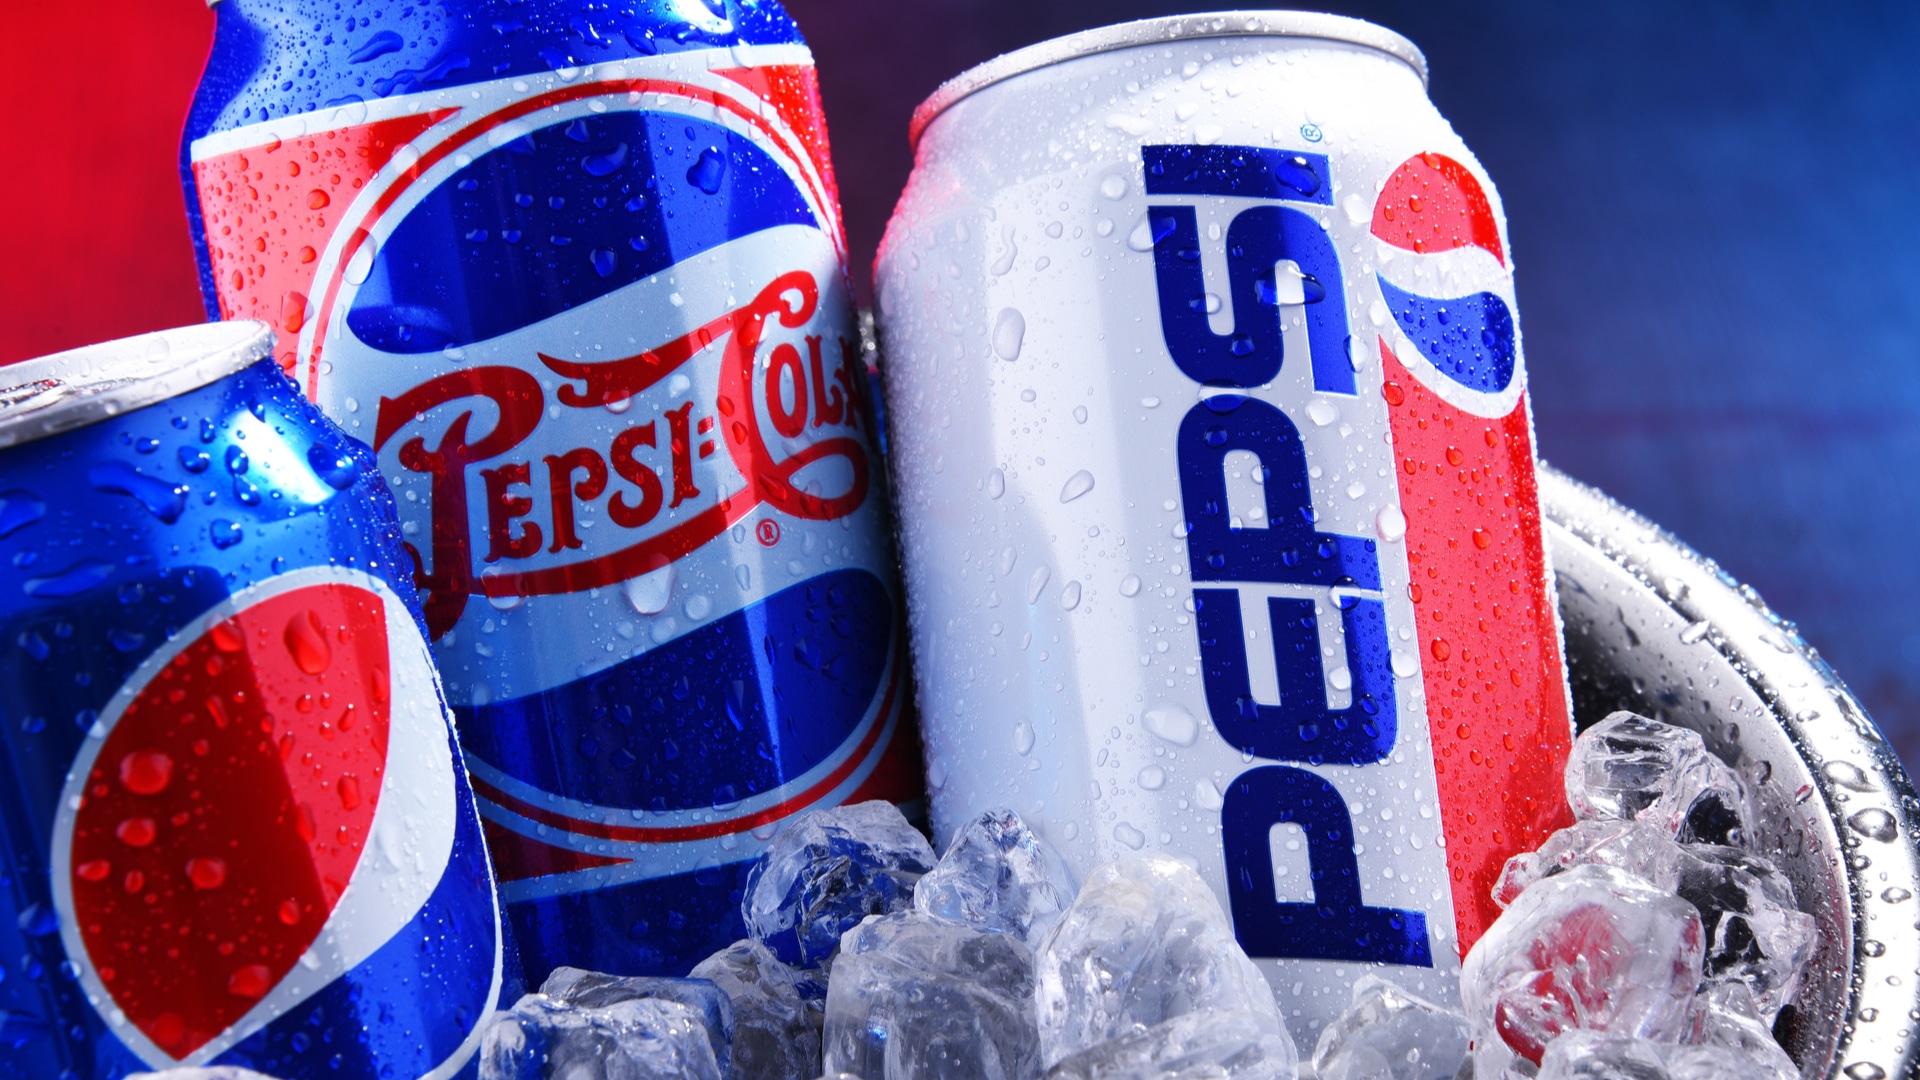 Latas de refrigerante Pepsi, da empresa PepsiCo